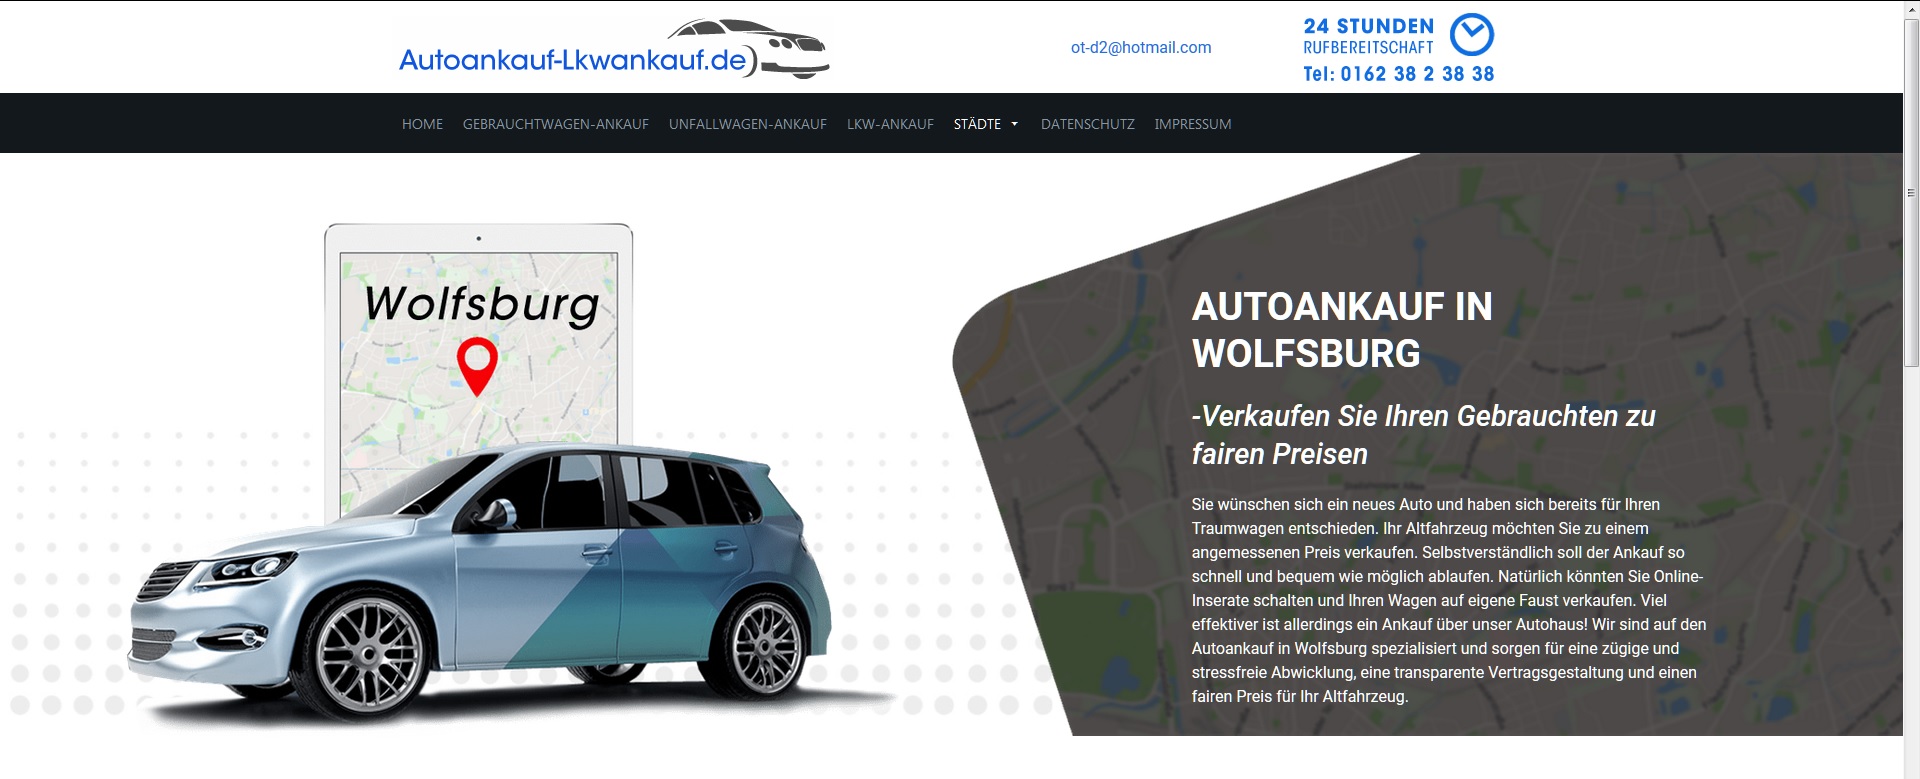 Autoankauf Wiesbaden: Zuverlässiger Profi im Gebrauchtfahrzeughandel